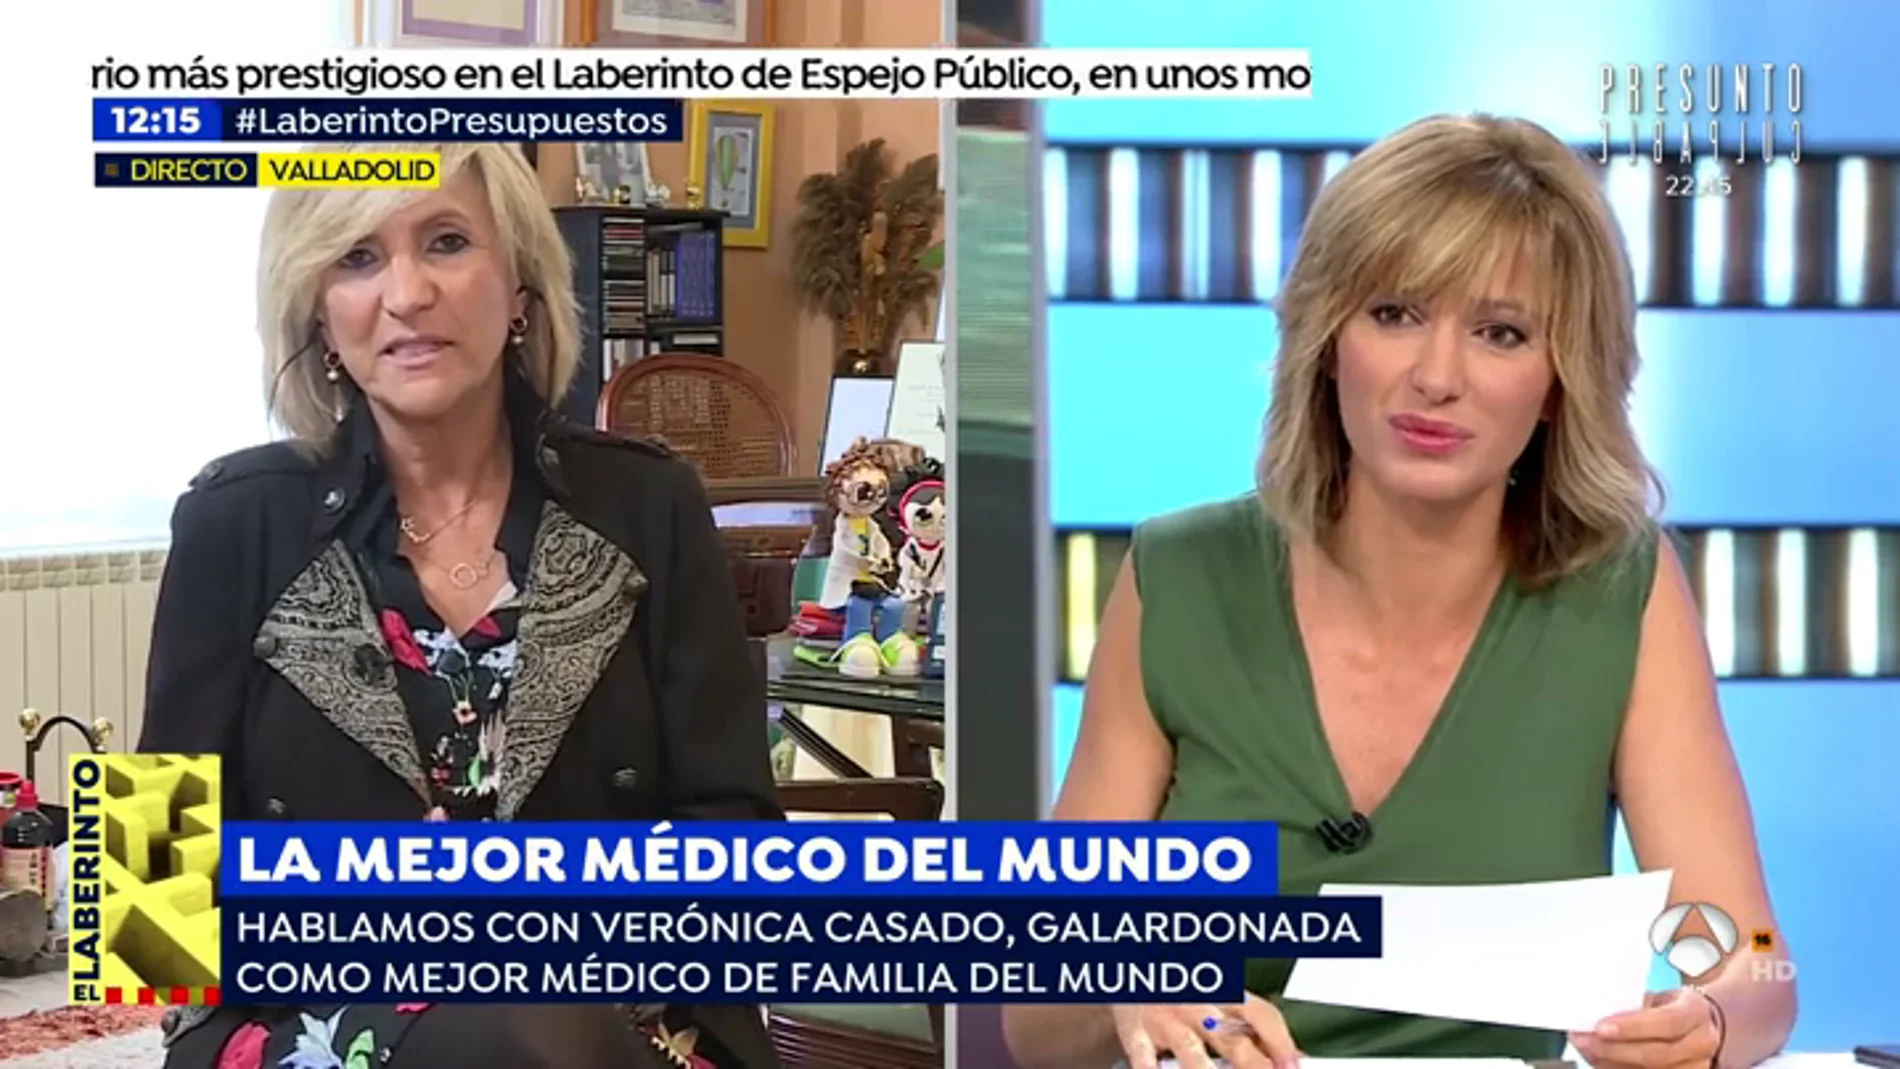 Verónica Casado, galardonada como mejor médico de familia del mundo: "La atención primaria tiene que ser la base del sistema y no se ha financiado correctamente"